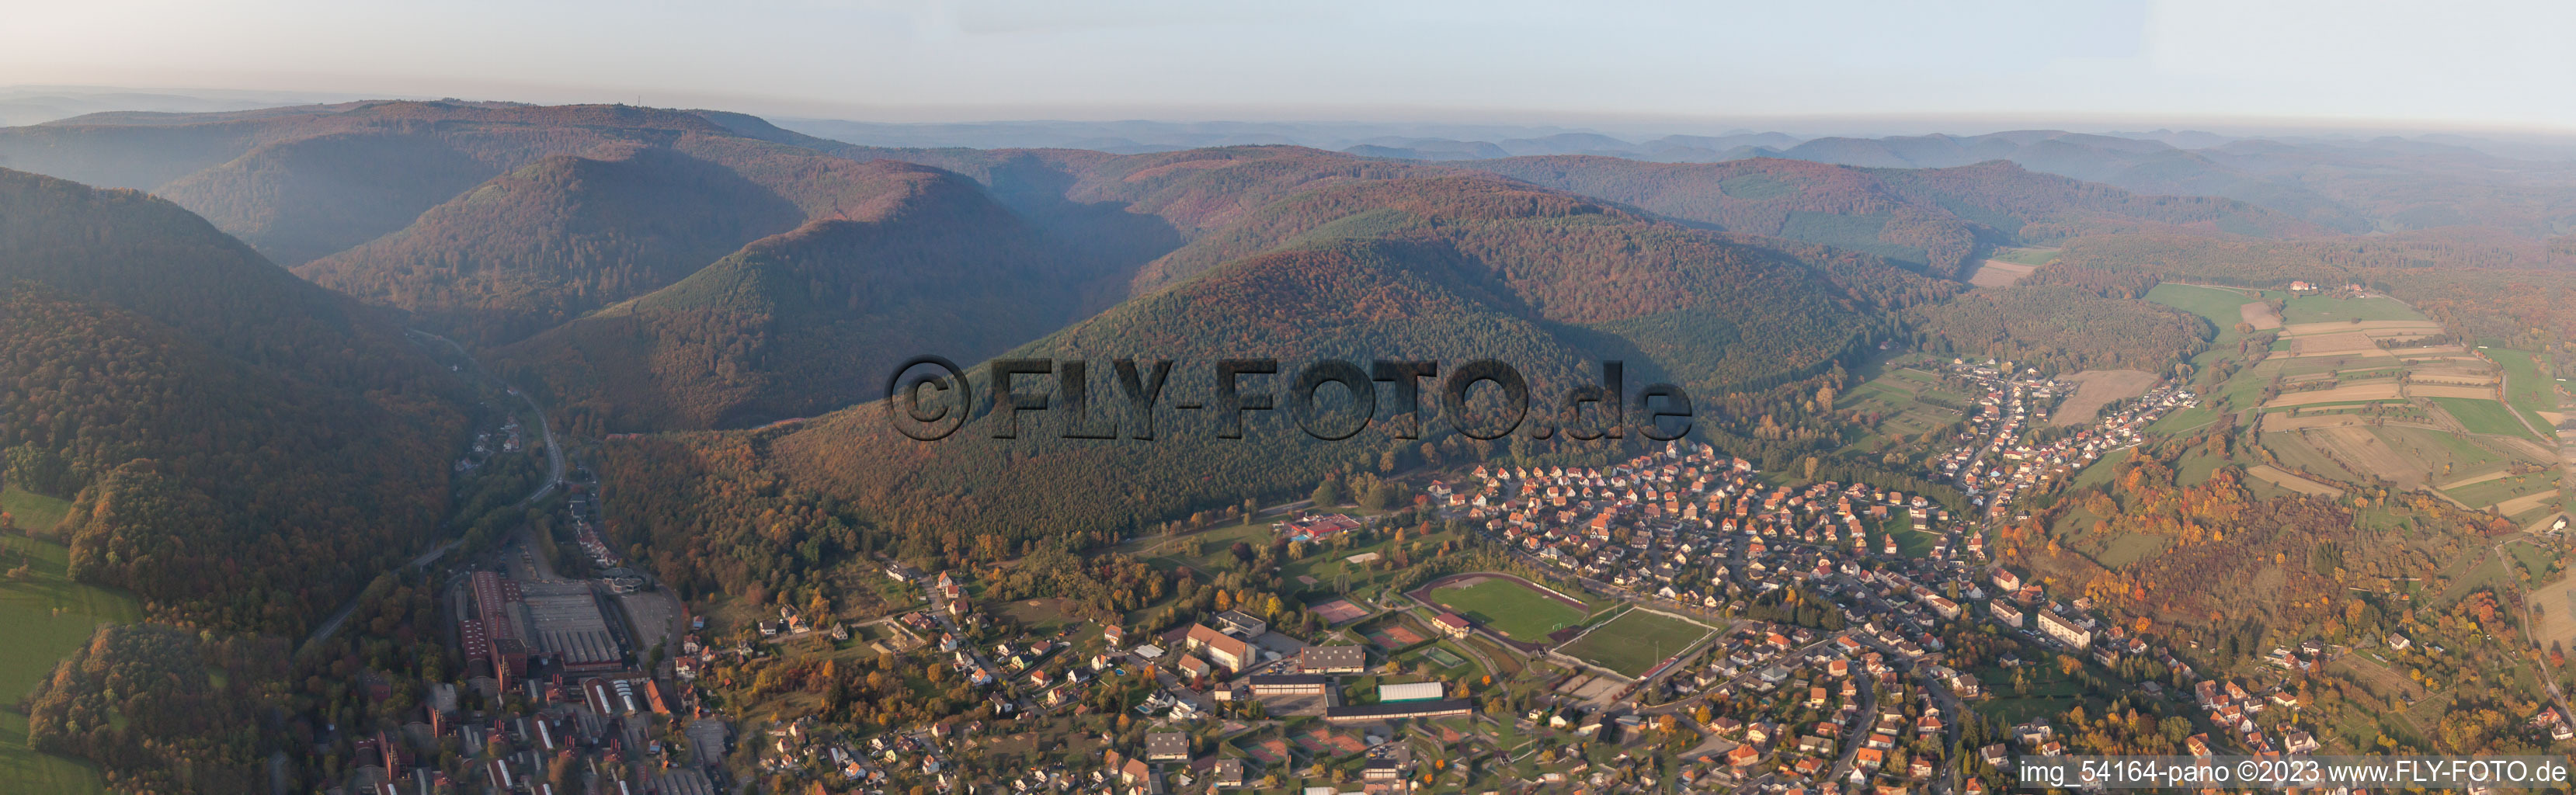 Vue aérienne de Panorama à Niederbronn-les-Bains dans le département Bas Rhin, France